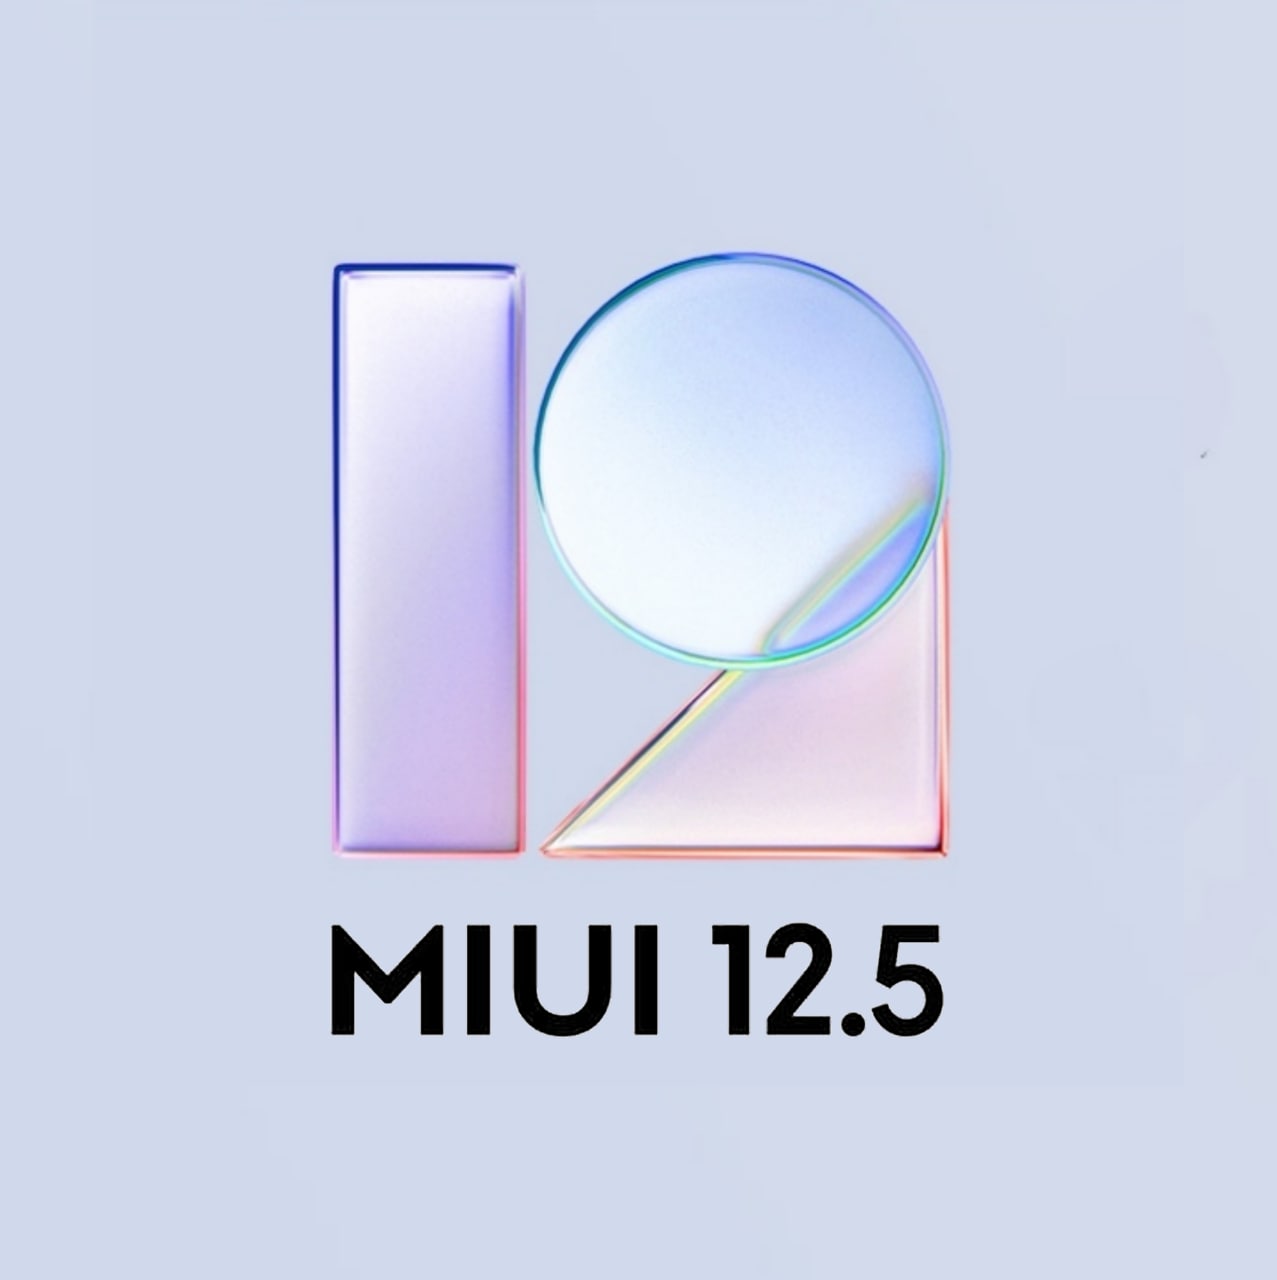 Redmi 8 and Redmi 8A MIUI 12.5 update